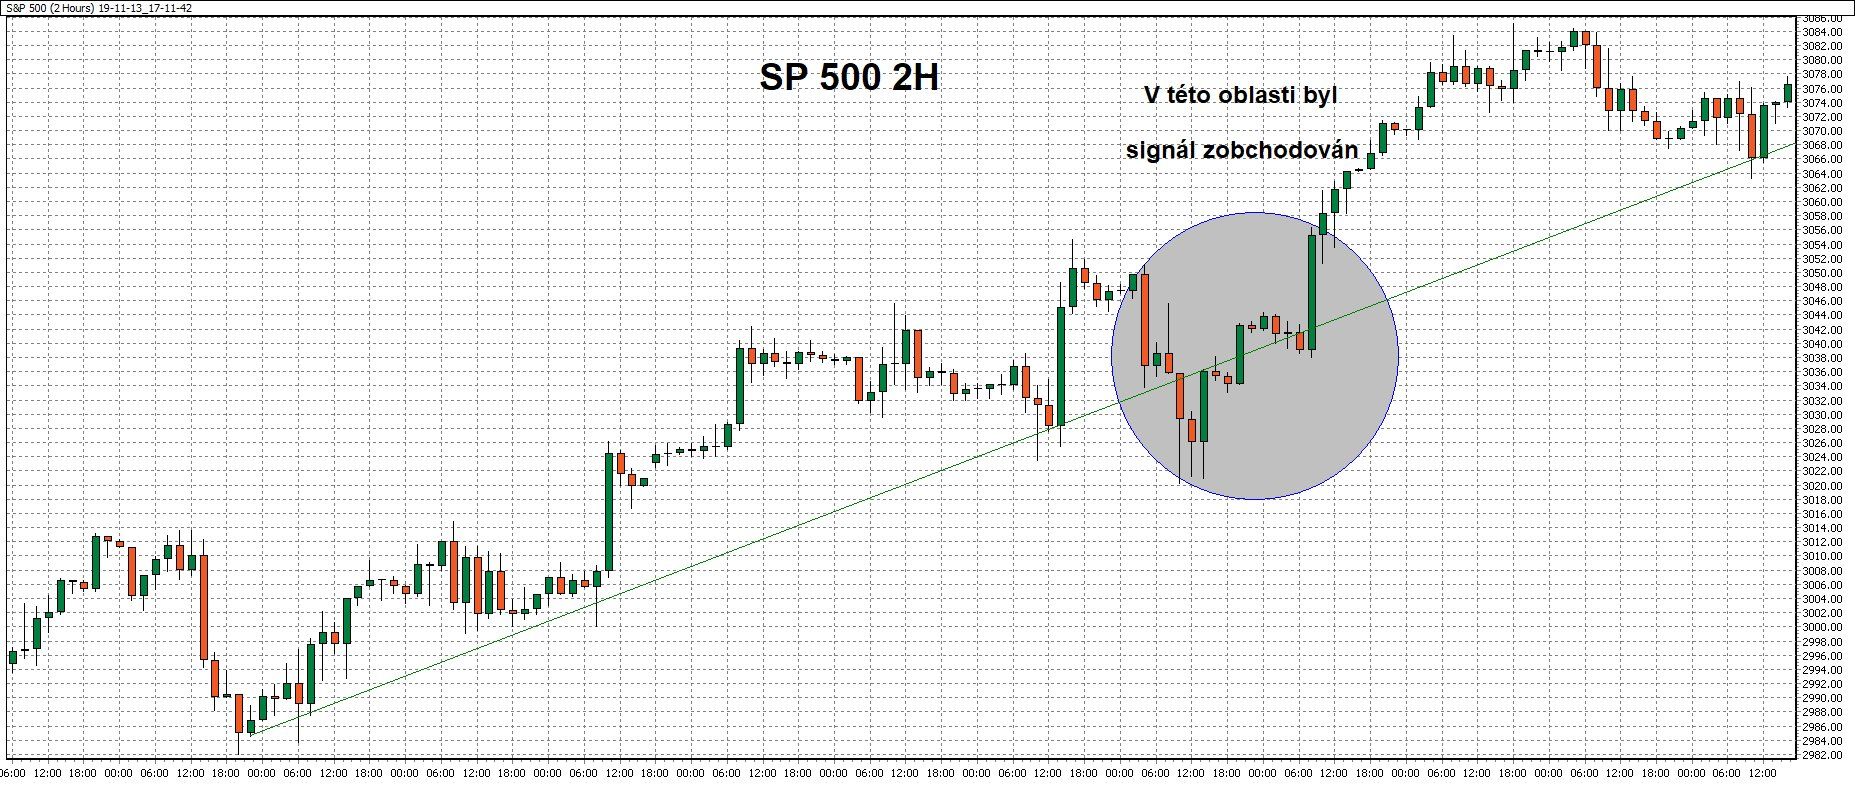 2hodinový graf - ukázka obchodu na akciovém indexu SP500 s pomocí WinSignals